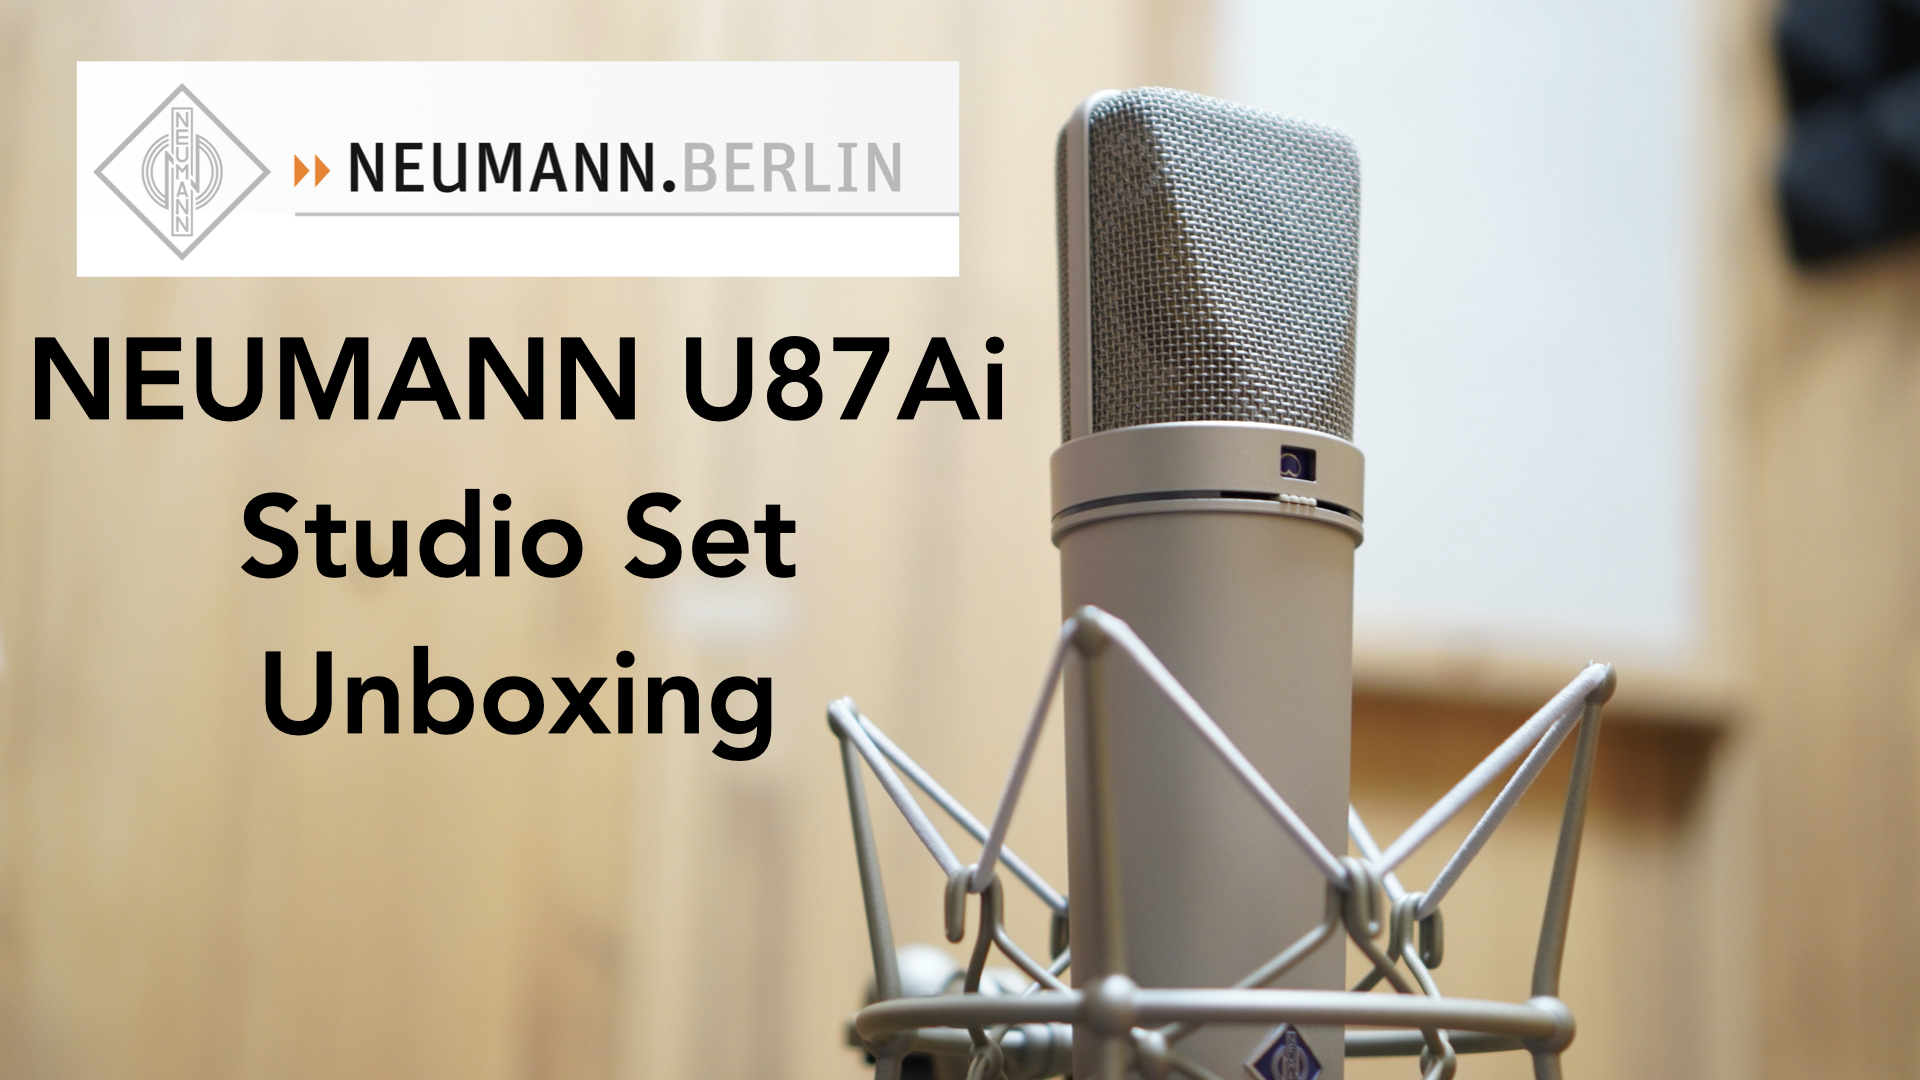 ノイマンの超有名なコンデンサーマイク「NEUMANN U87Ai Studio Set」の開封レビューです。【マイク録音比較あり/DTM